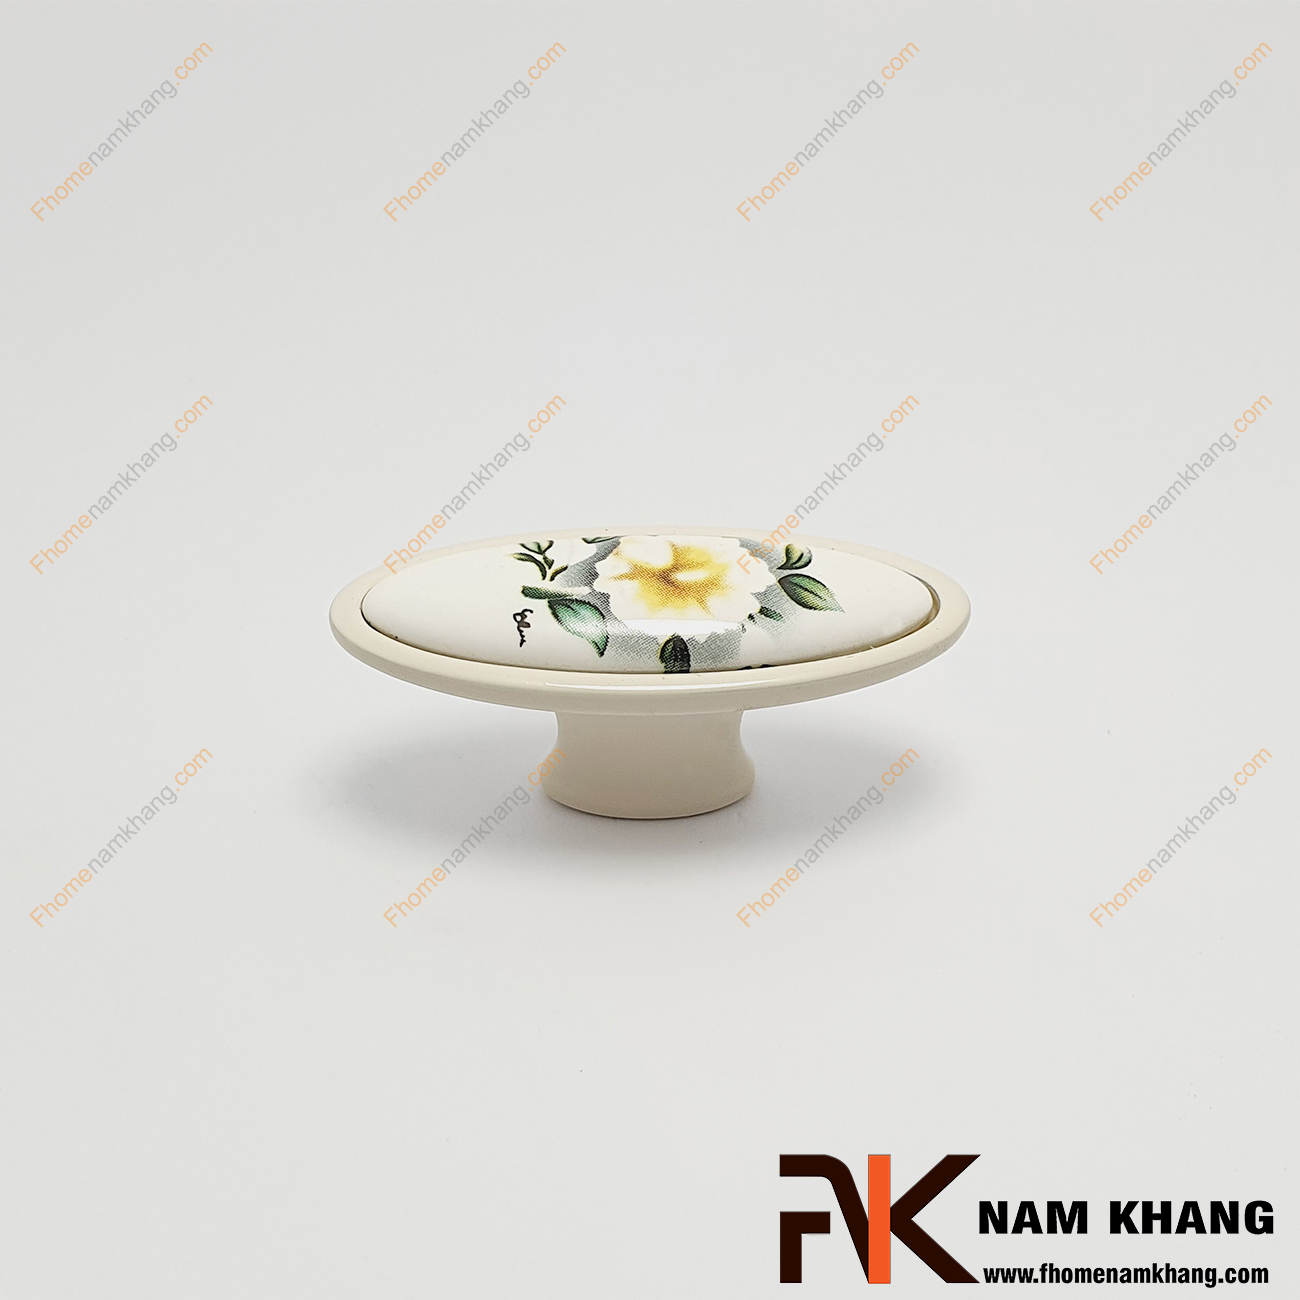 Núm cửa tủ ovan họa tiết hoa trà trắng NK019-HT được thiết kế với khuôn dạng tròn, bên trên là viên sứ trắng hoa trà được bao bọc từ hợp kim màu trắng rất đậm chất cổ điển